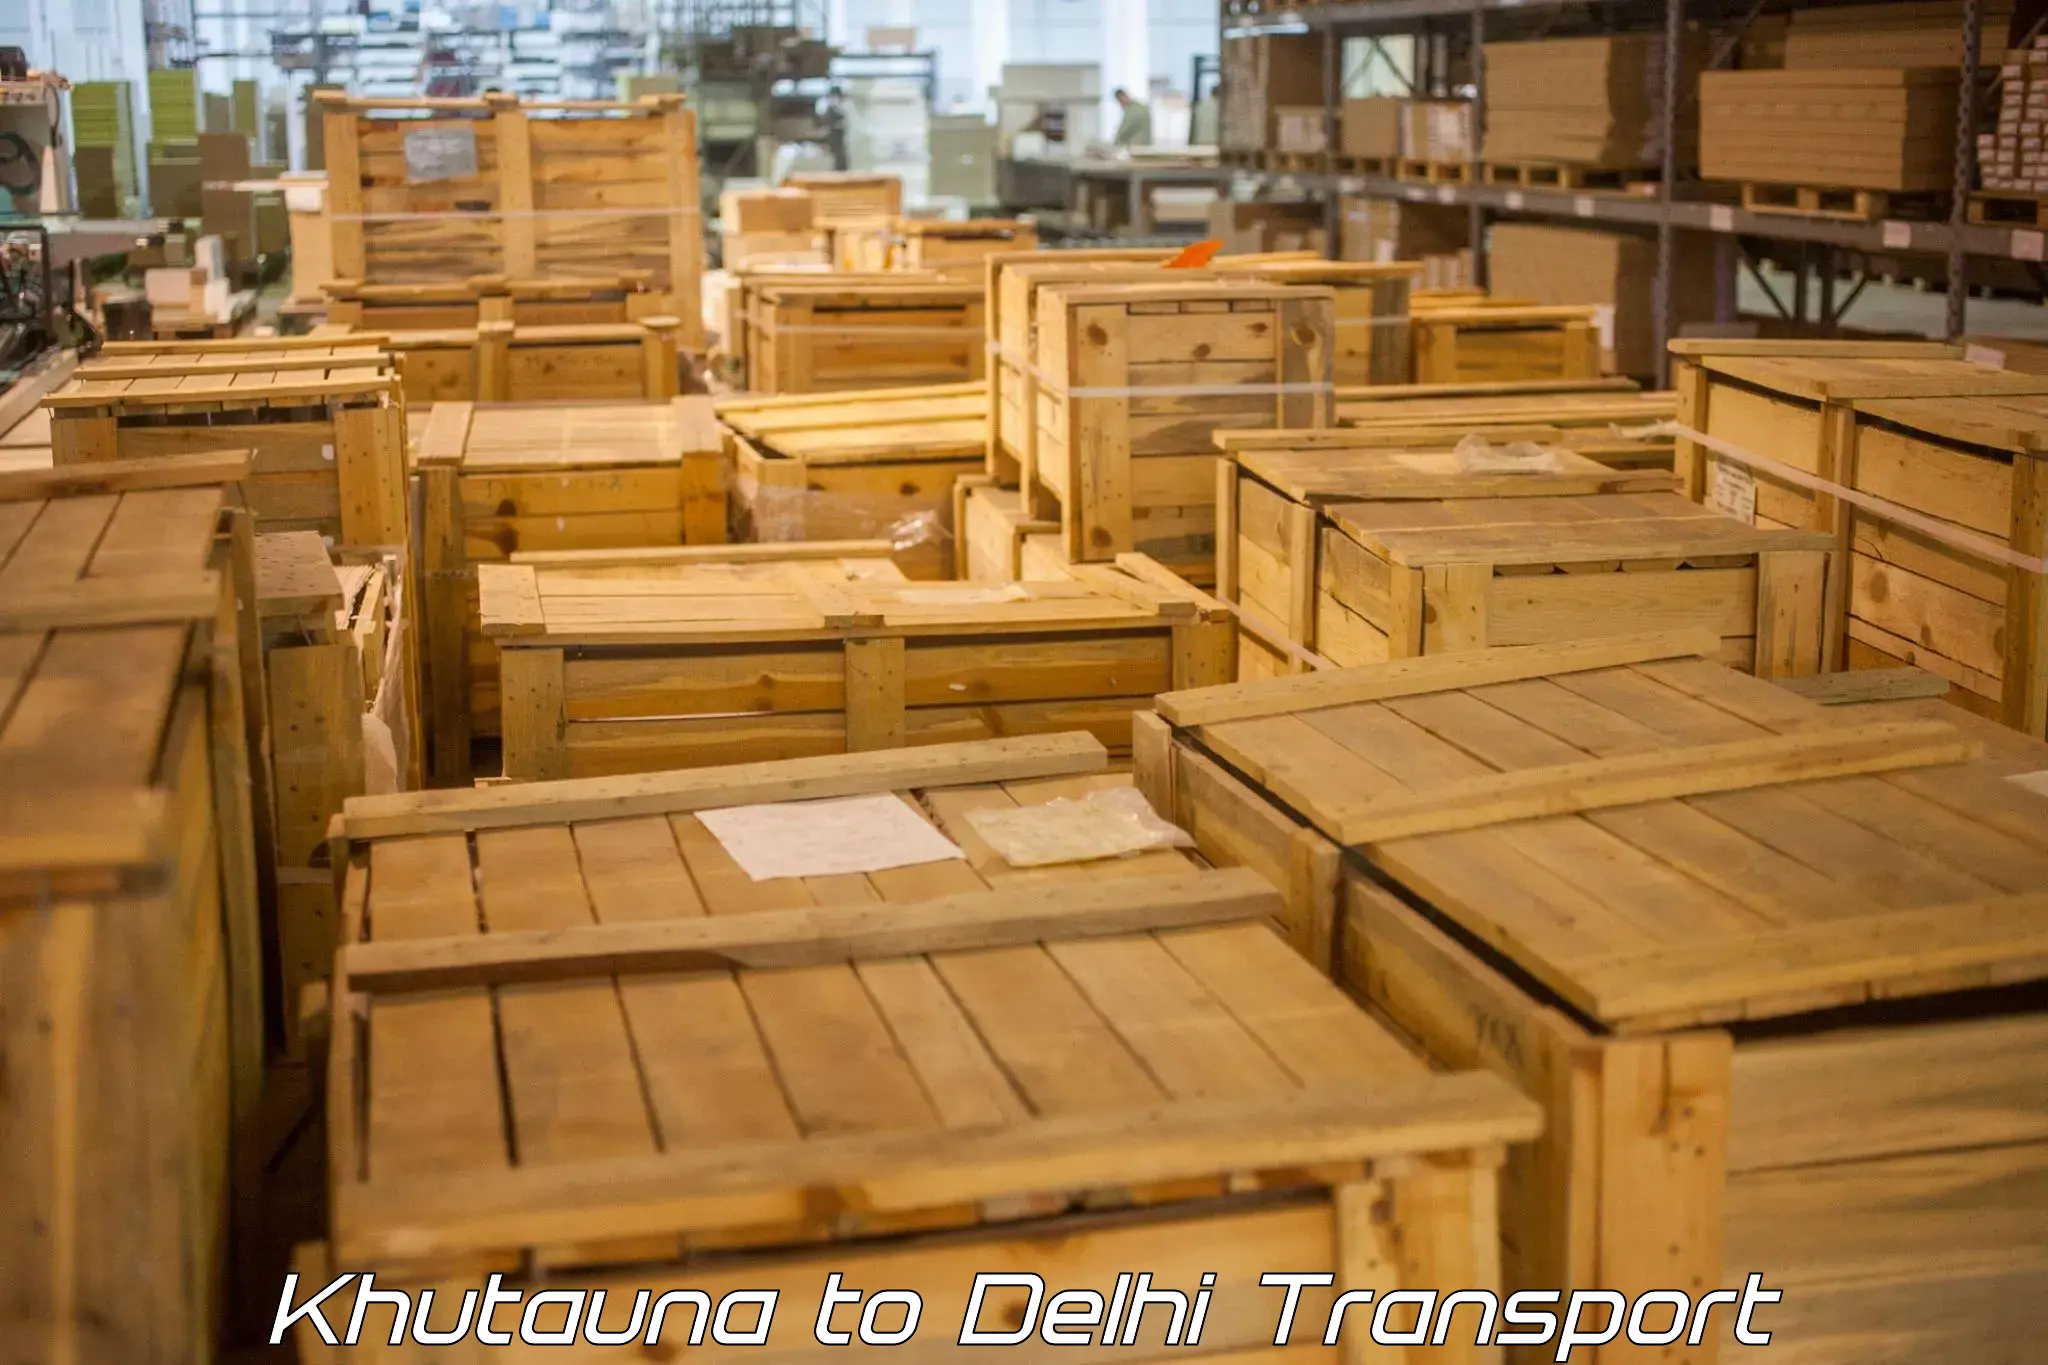 Nearby transport service Khutauna to Delhi